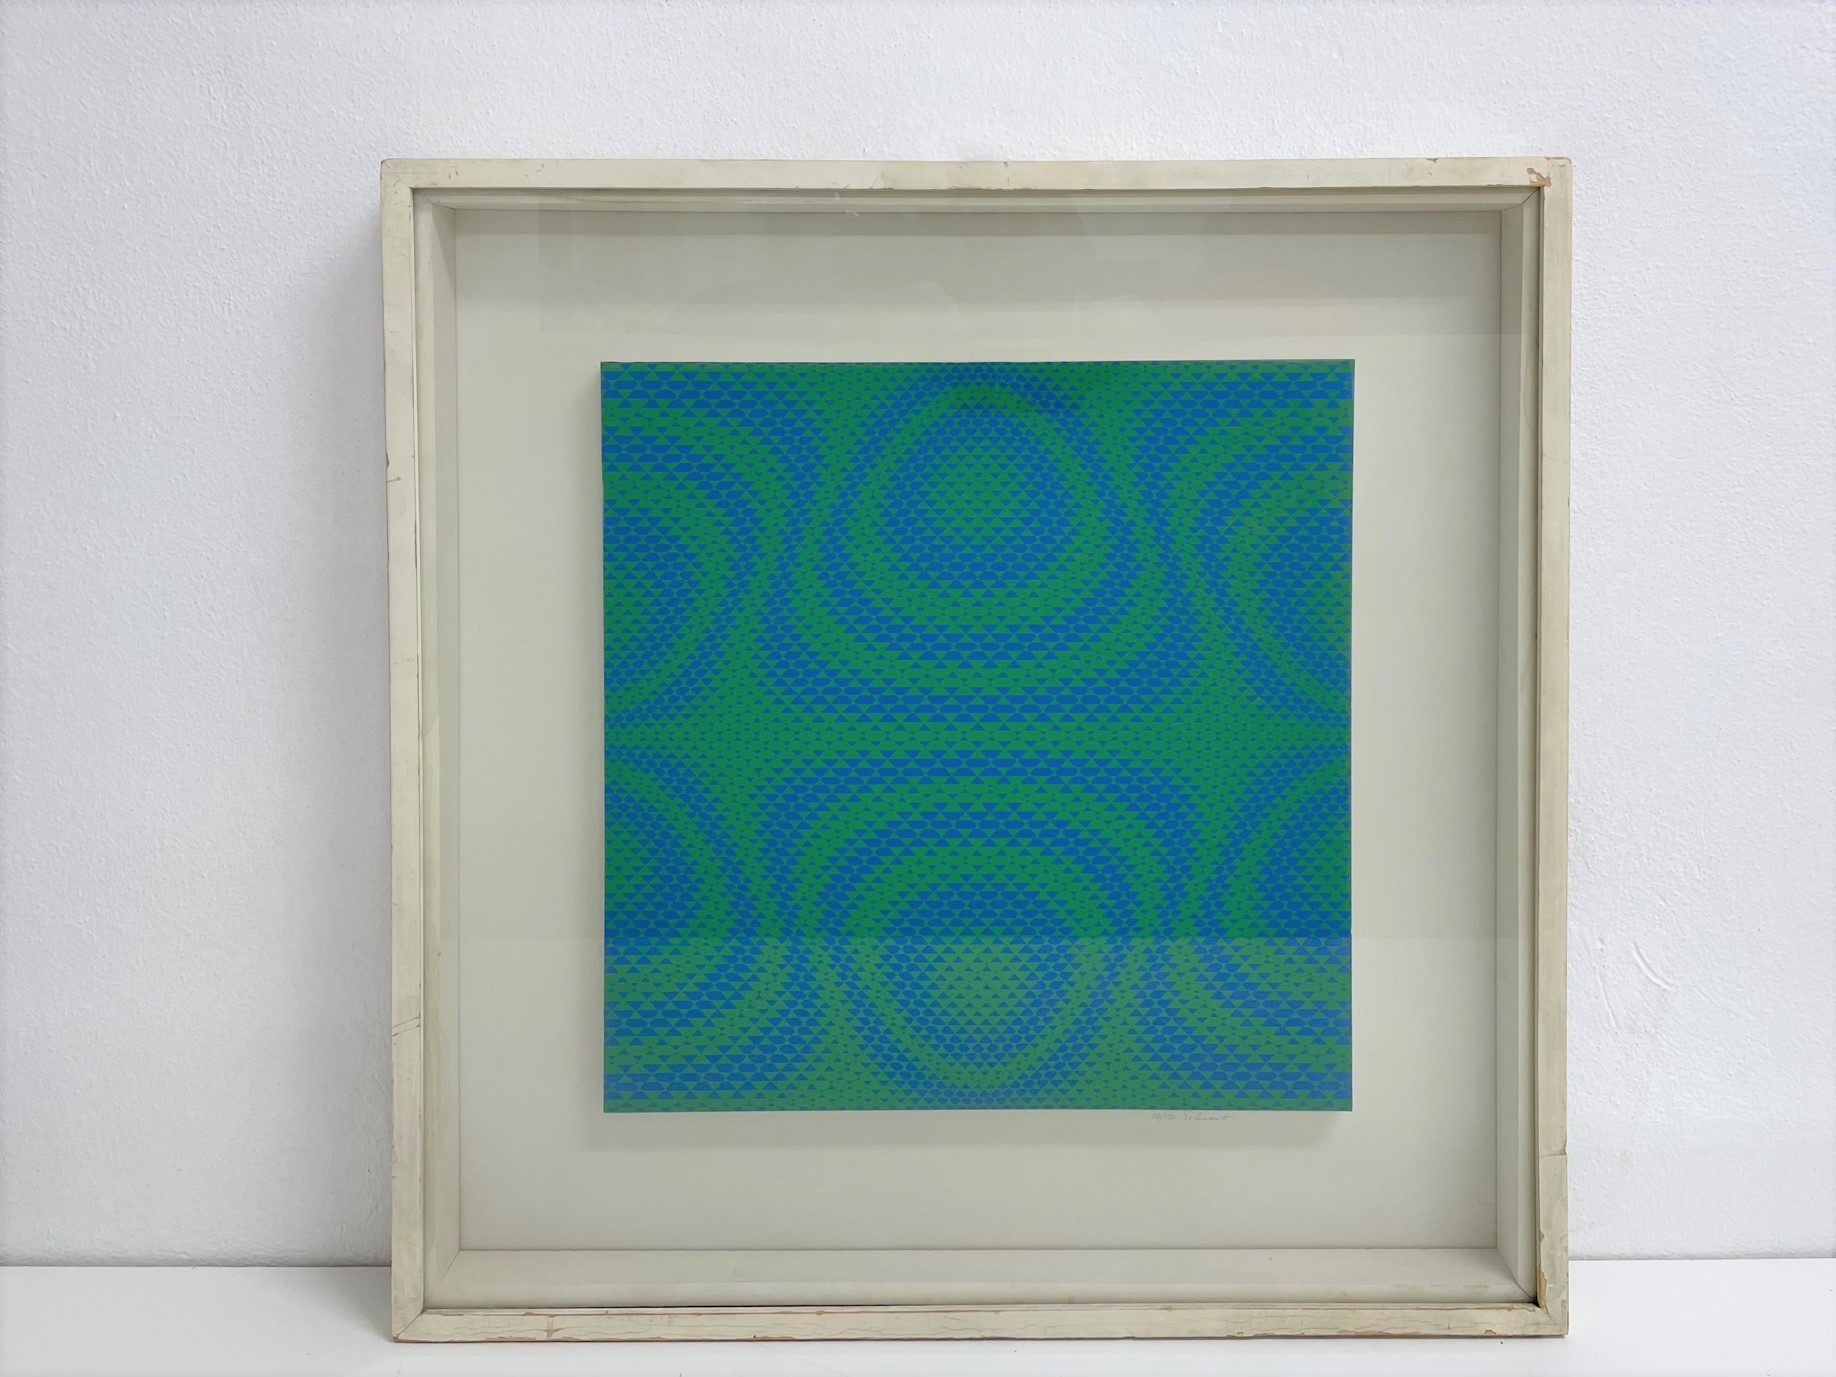 Serigrafia Optical di Jorrit Tornquist anni ’70. Colore verde.